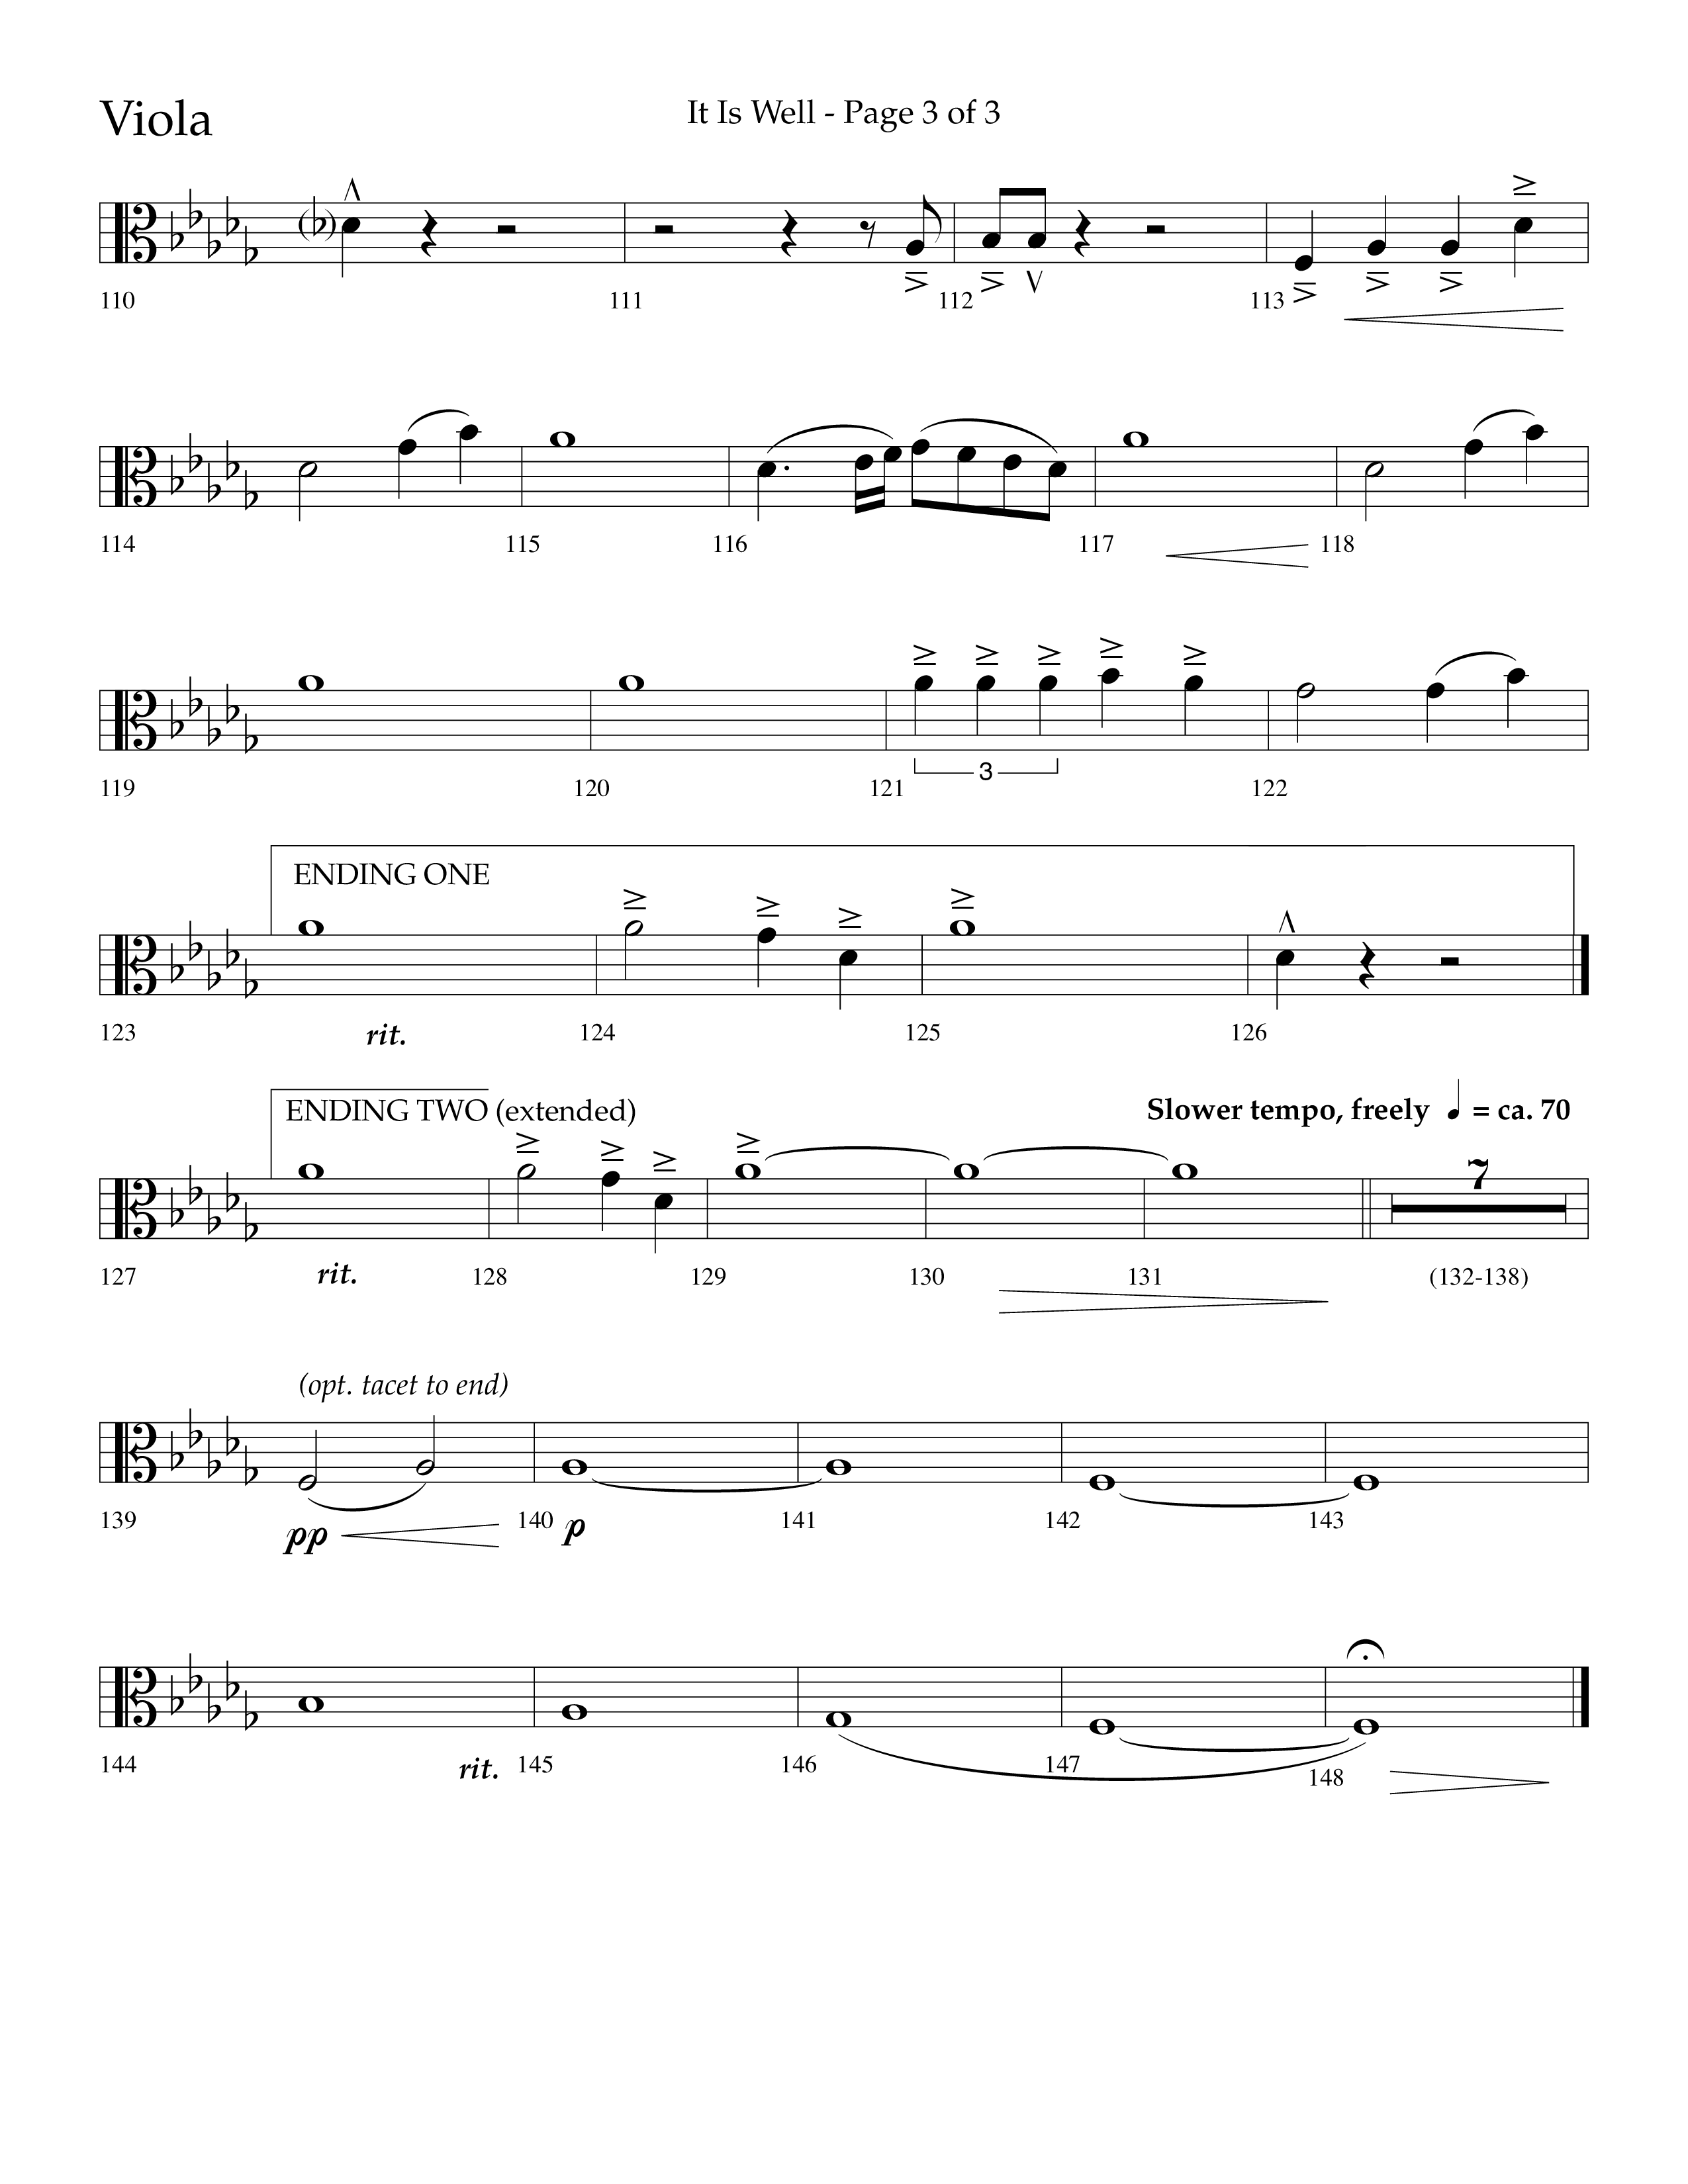 It Is Well (Choral Anthem SATB) Viola (Lifeway Choral / Arr. Cliff Duren)